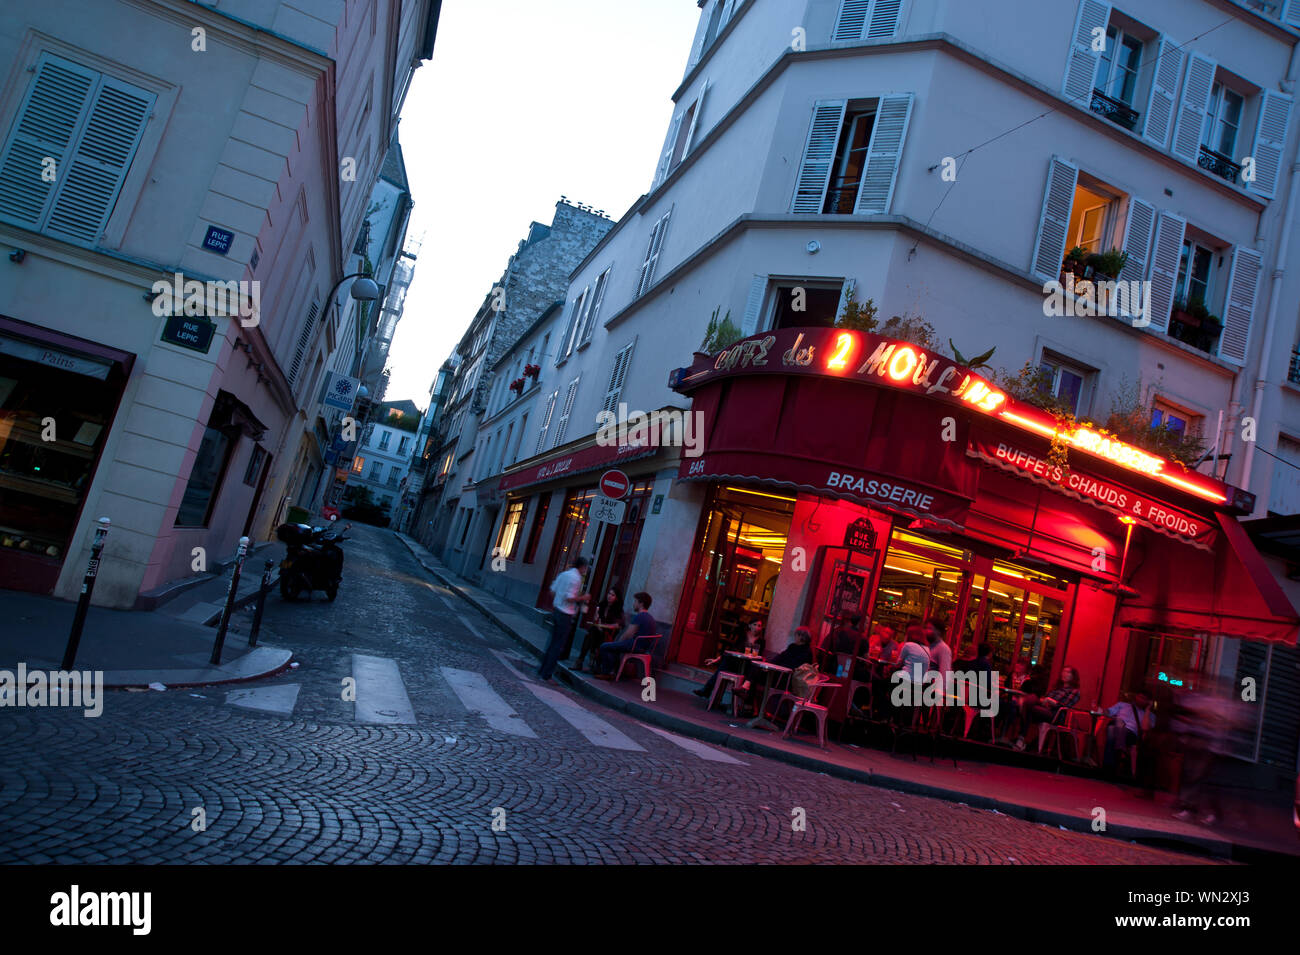 Das Café des 2 Moulins ist ein Café im Pariser Stadtteil Montmartre an der Kreuzung der Rue Lepic und der Rue Cauchois. Es hat seinen Namen von den be Stock Photo